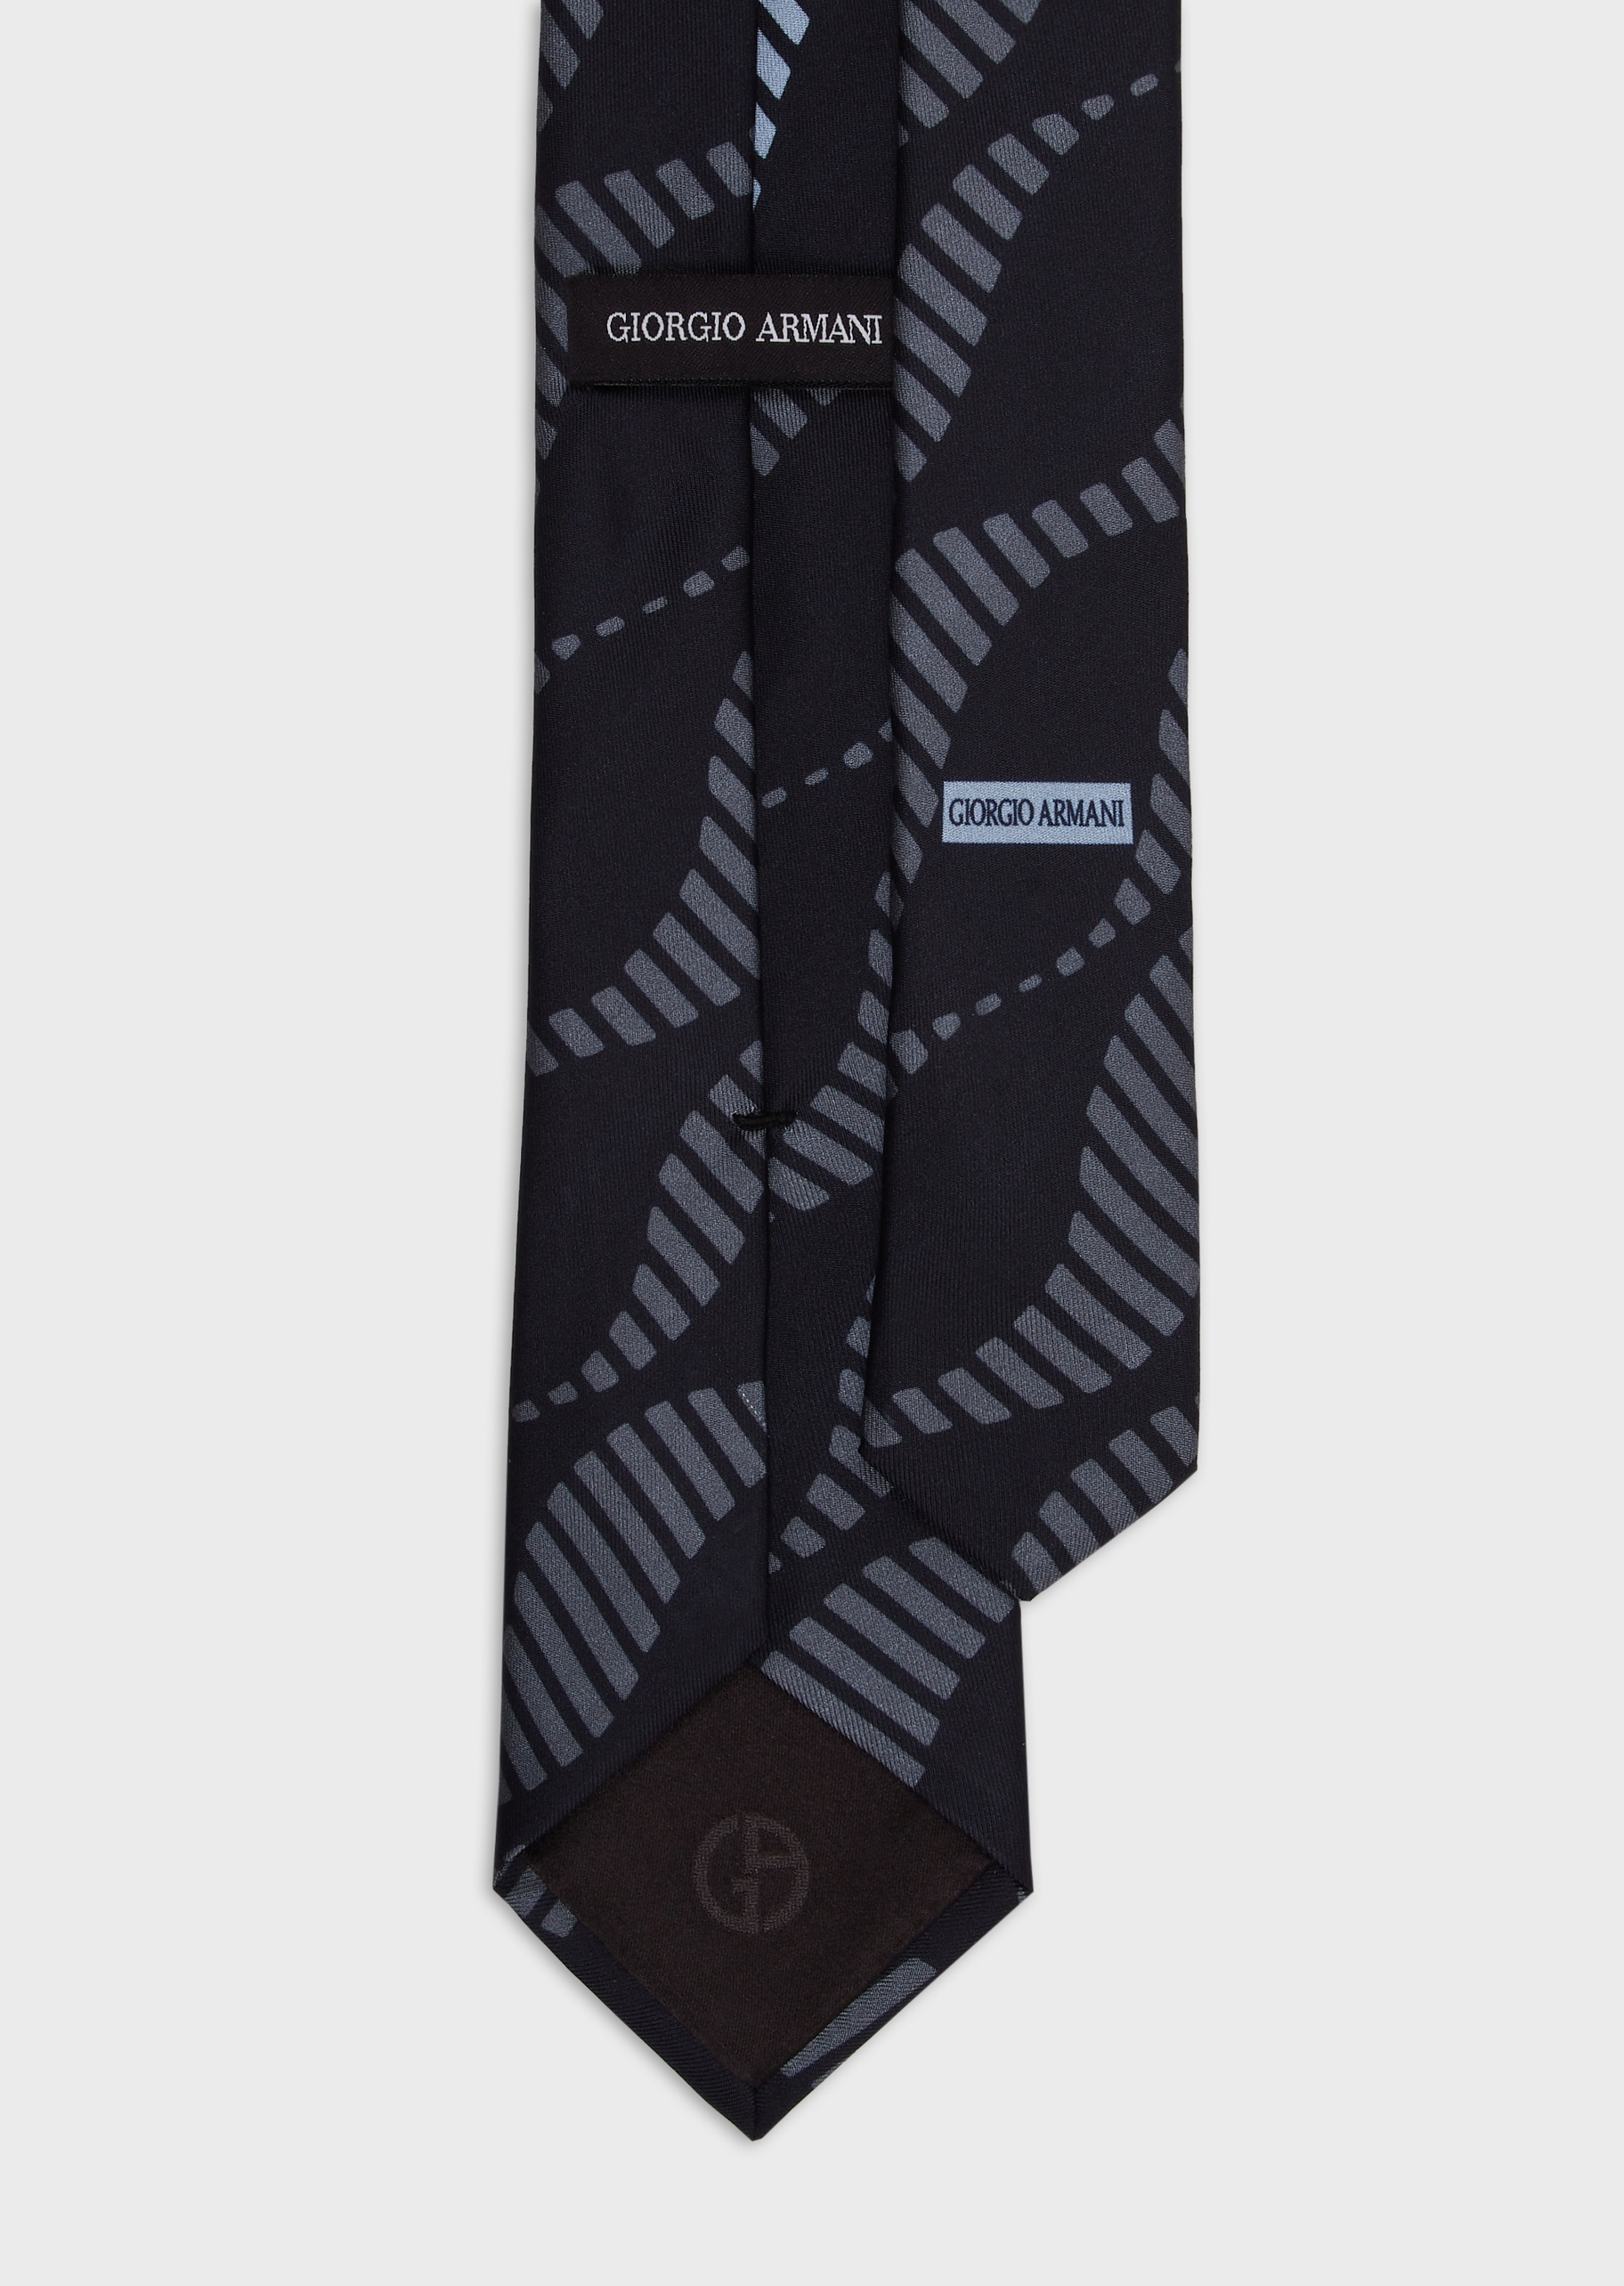 Giorgio Armani 条纹波浪真丝领带